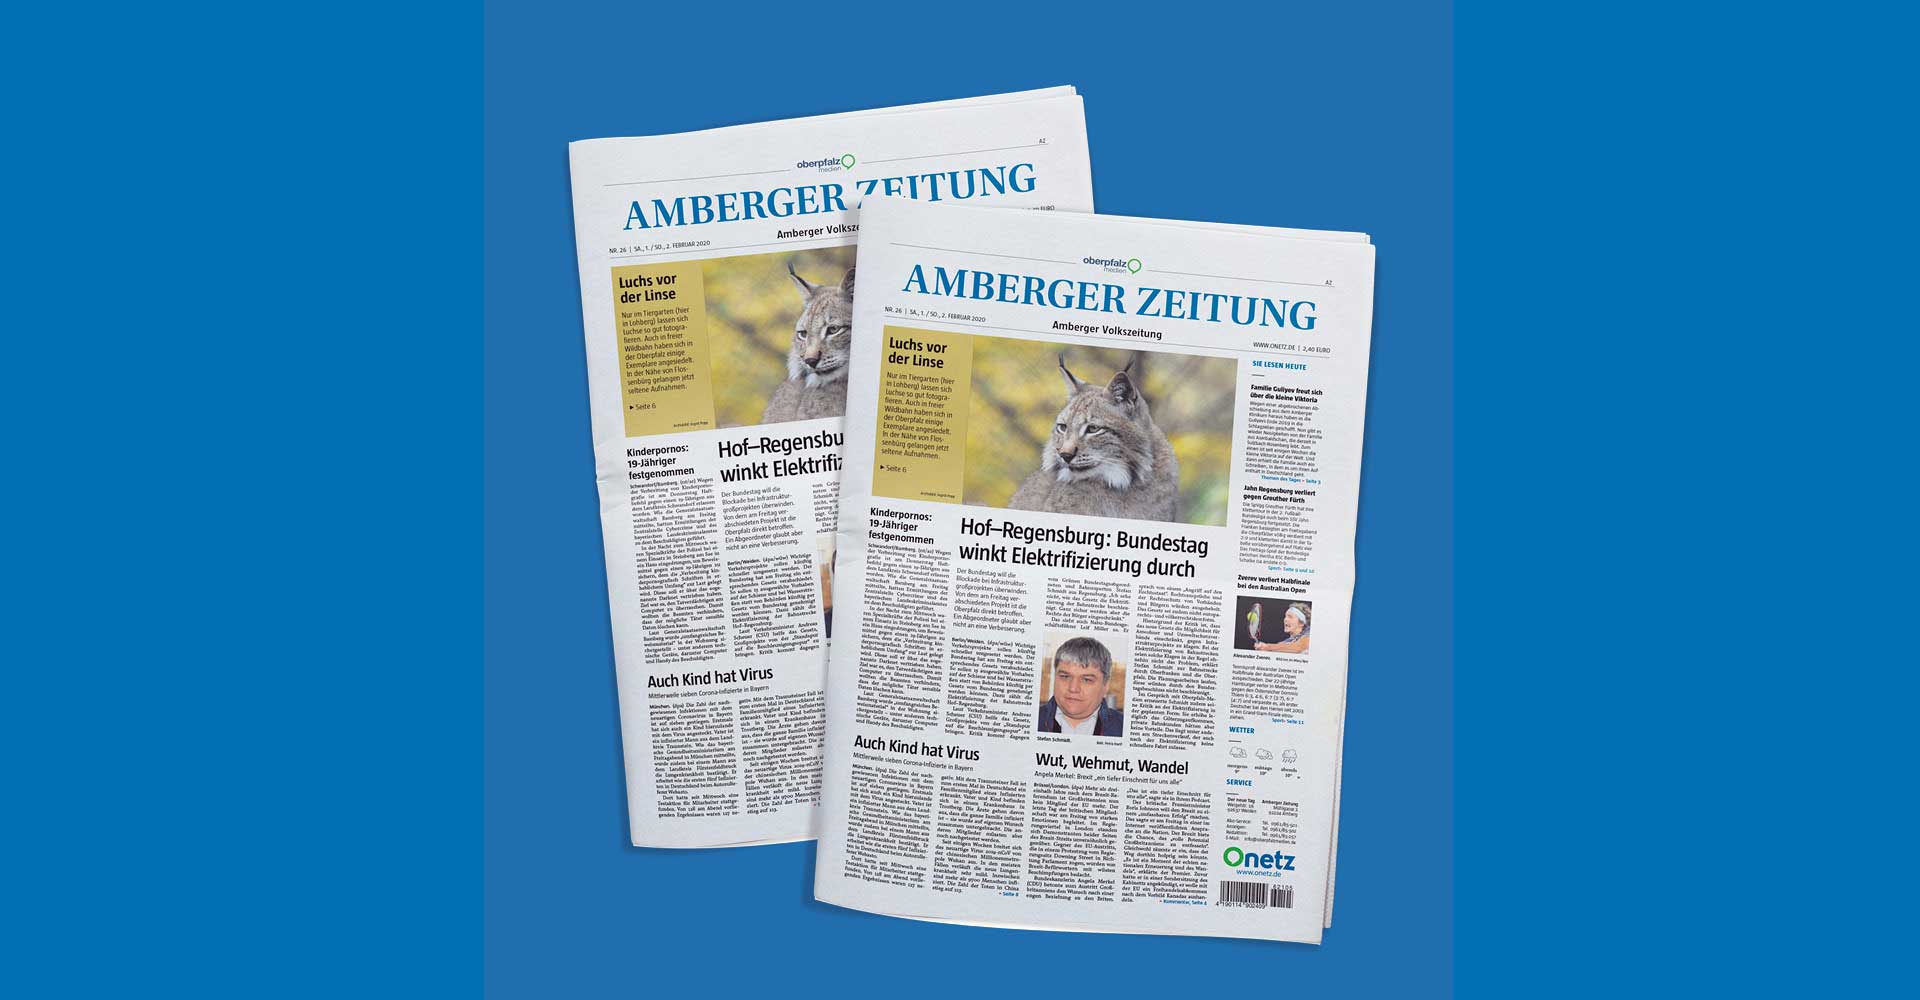 Ansicht zweier Titelblätter derselben Ausgabe der Tageszeitung „Amberger Zeitung“.